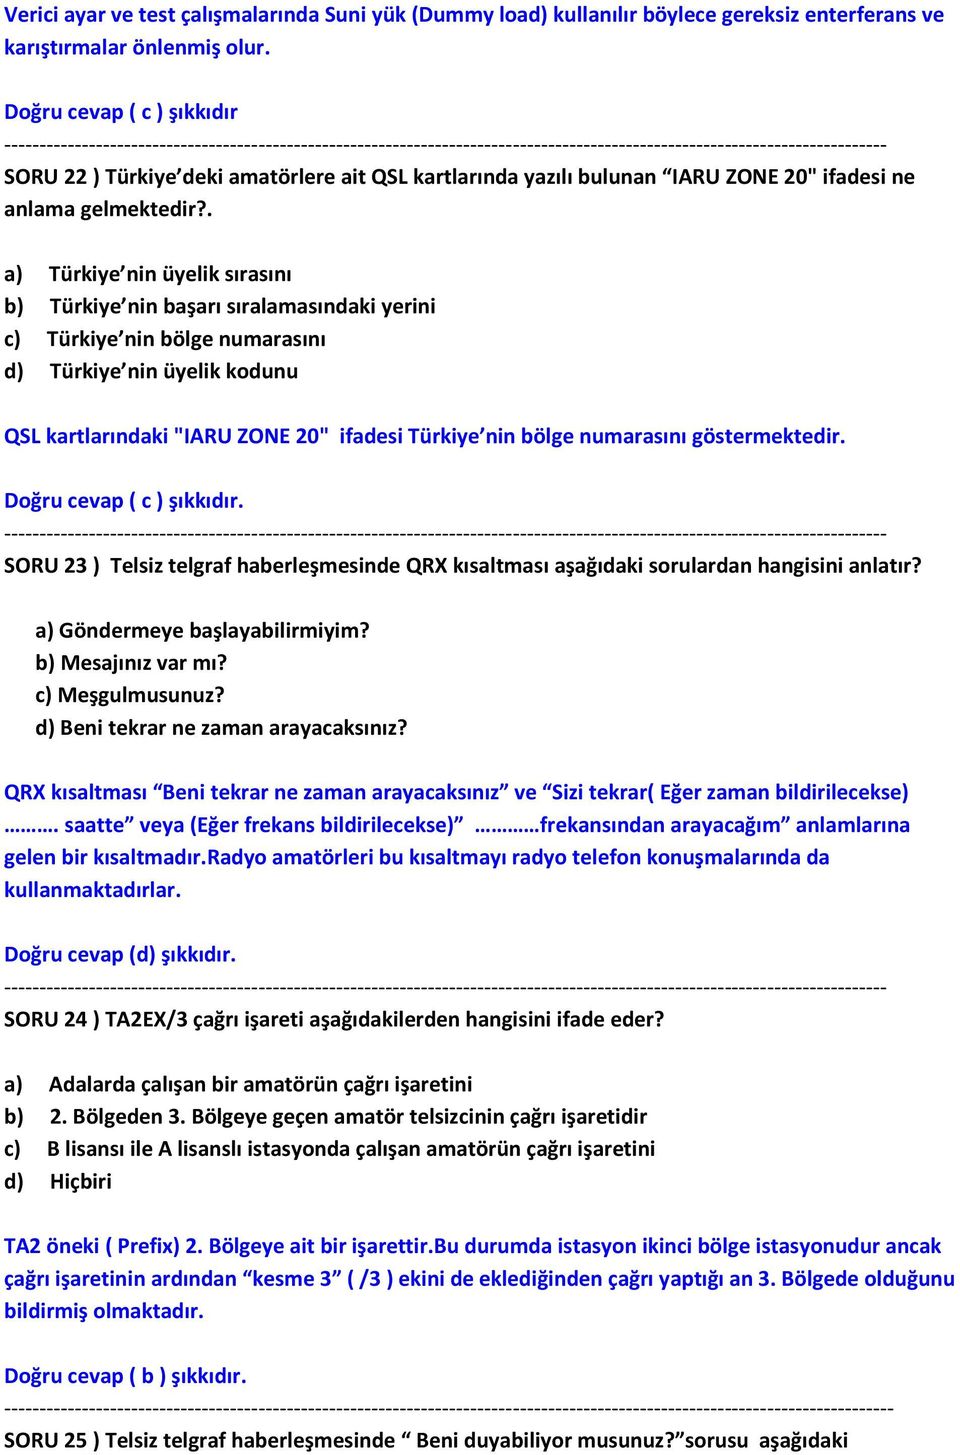 . a) Türkiye nin üyelik sırasını b) Türkiye nin başarı sıralamasındaki yerini c) Türkiye nin bölge numarasını d) Türkiye nin üyelik kodunu QSL kartlarındaki "IARU ZONE 20" ifadesi Türkiye nin bölge